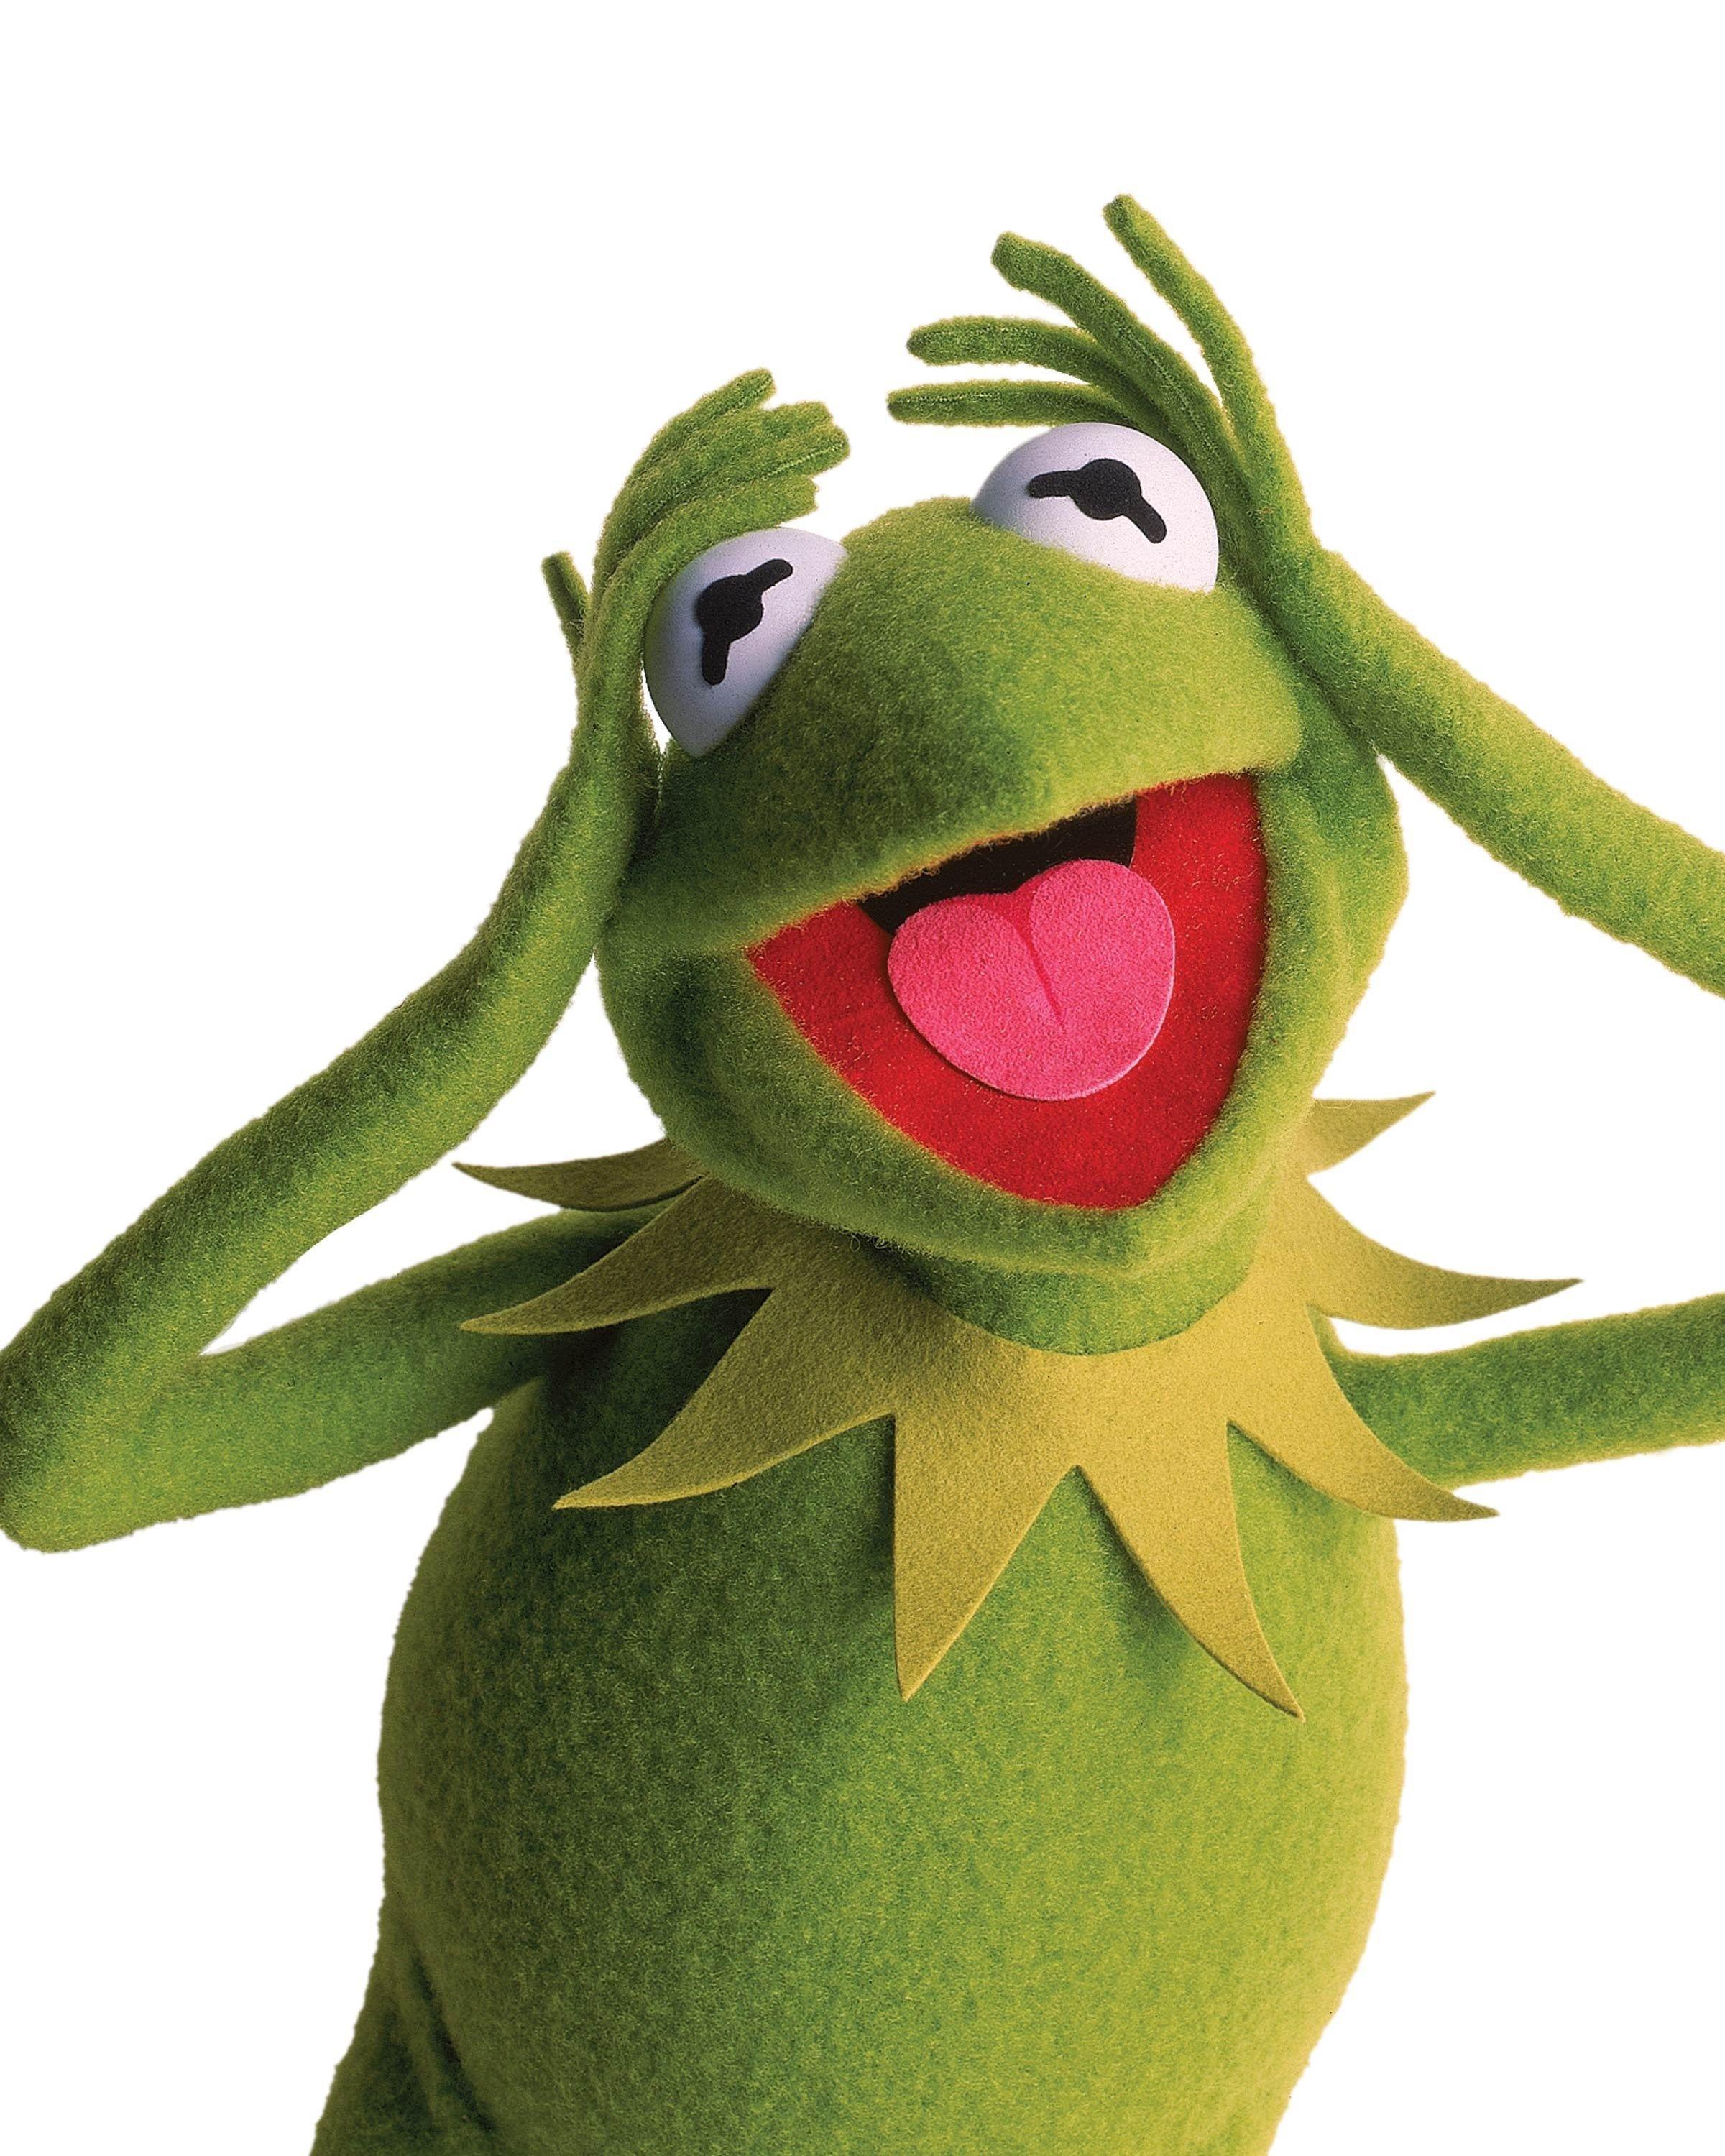 41 Kermit the Frog Wallpaper  WallpaperSafari